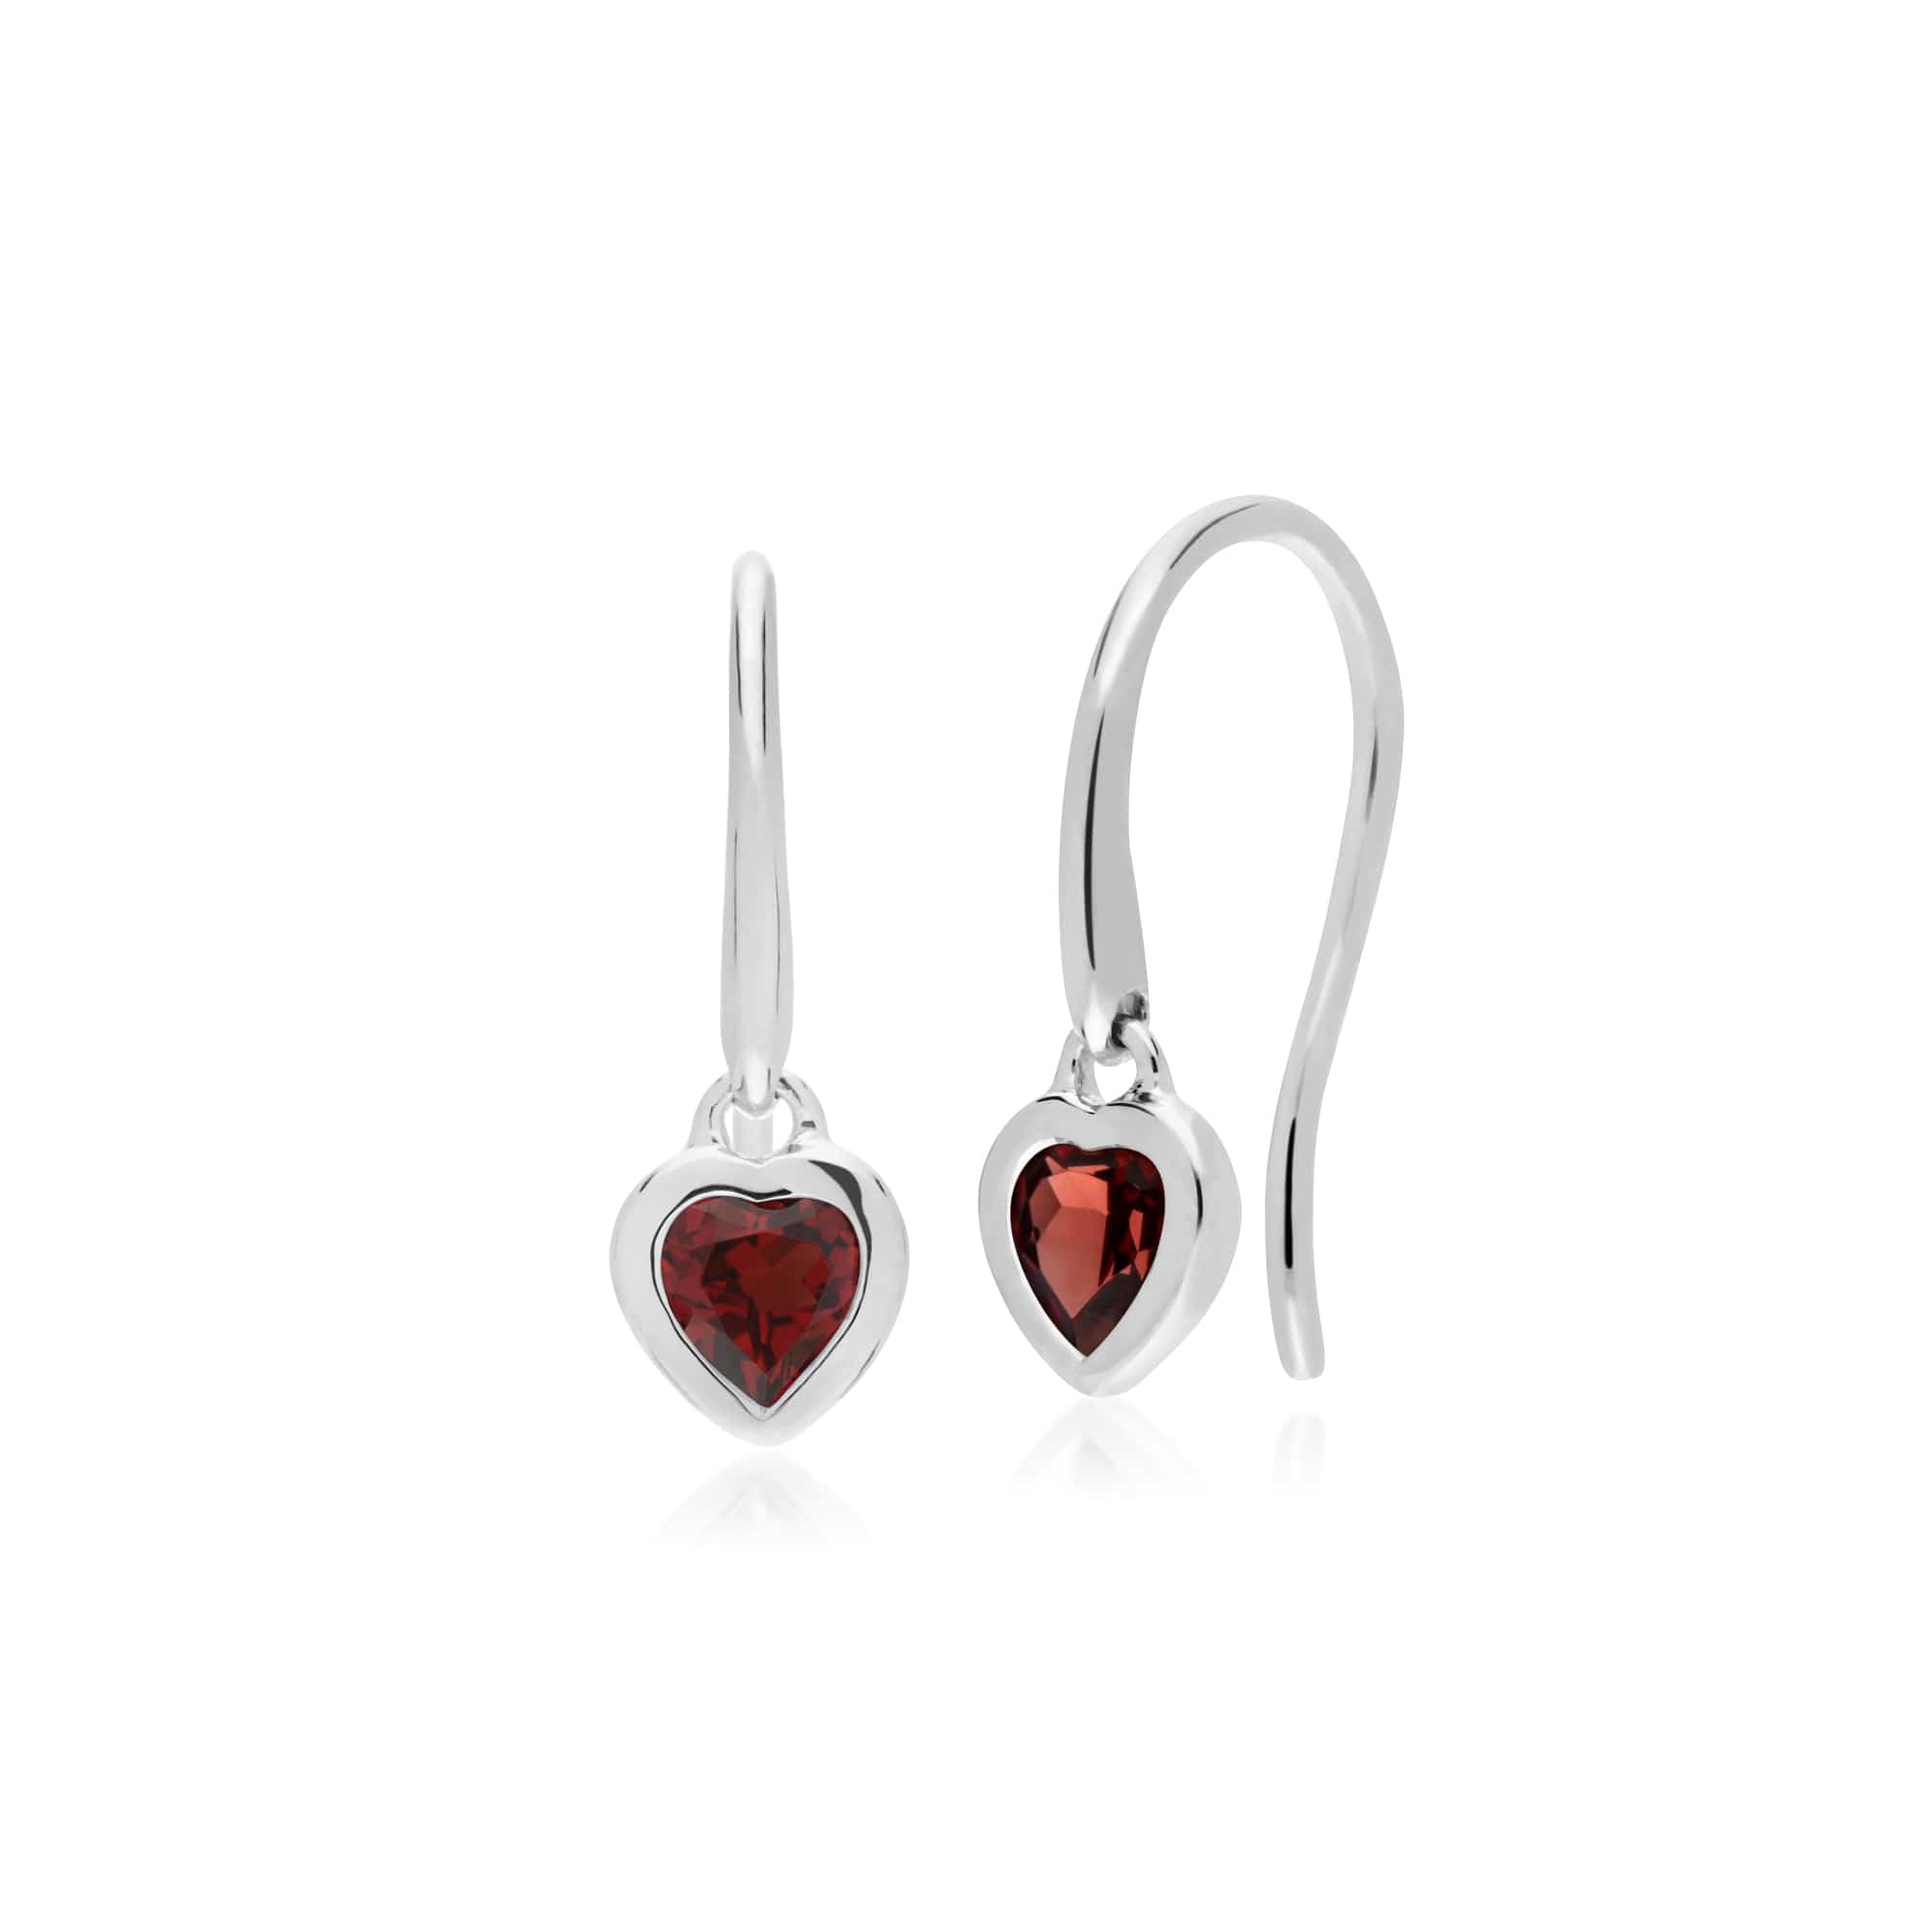 Heart Shaped Drop Earrings Garnet Silver